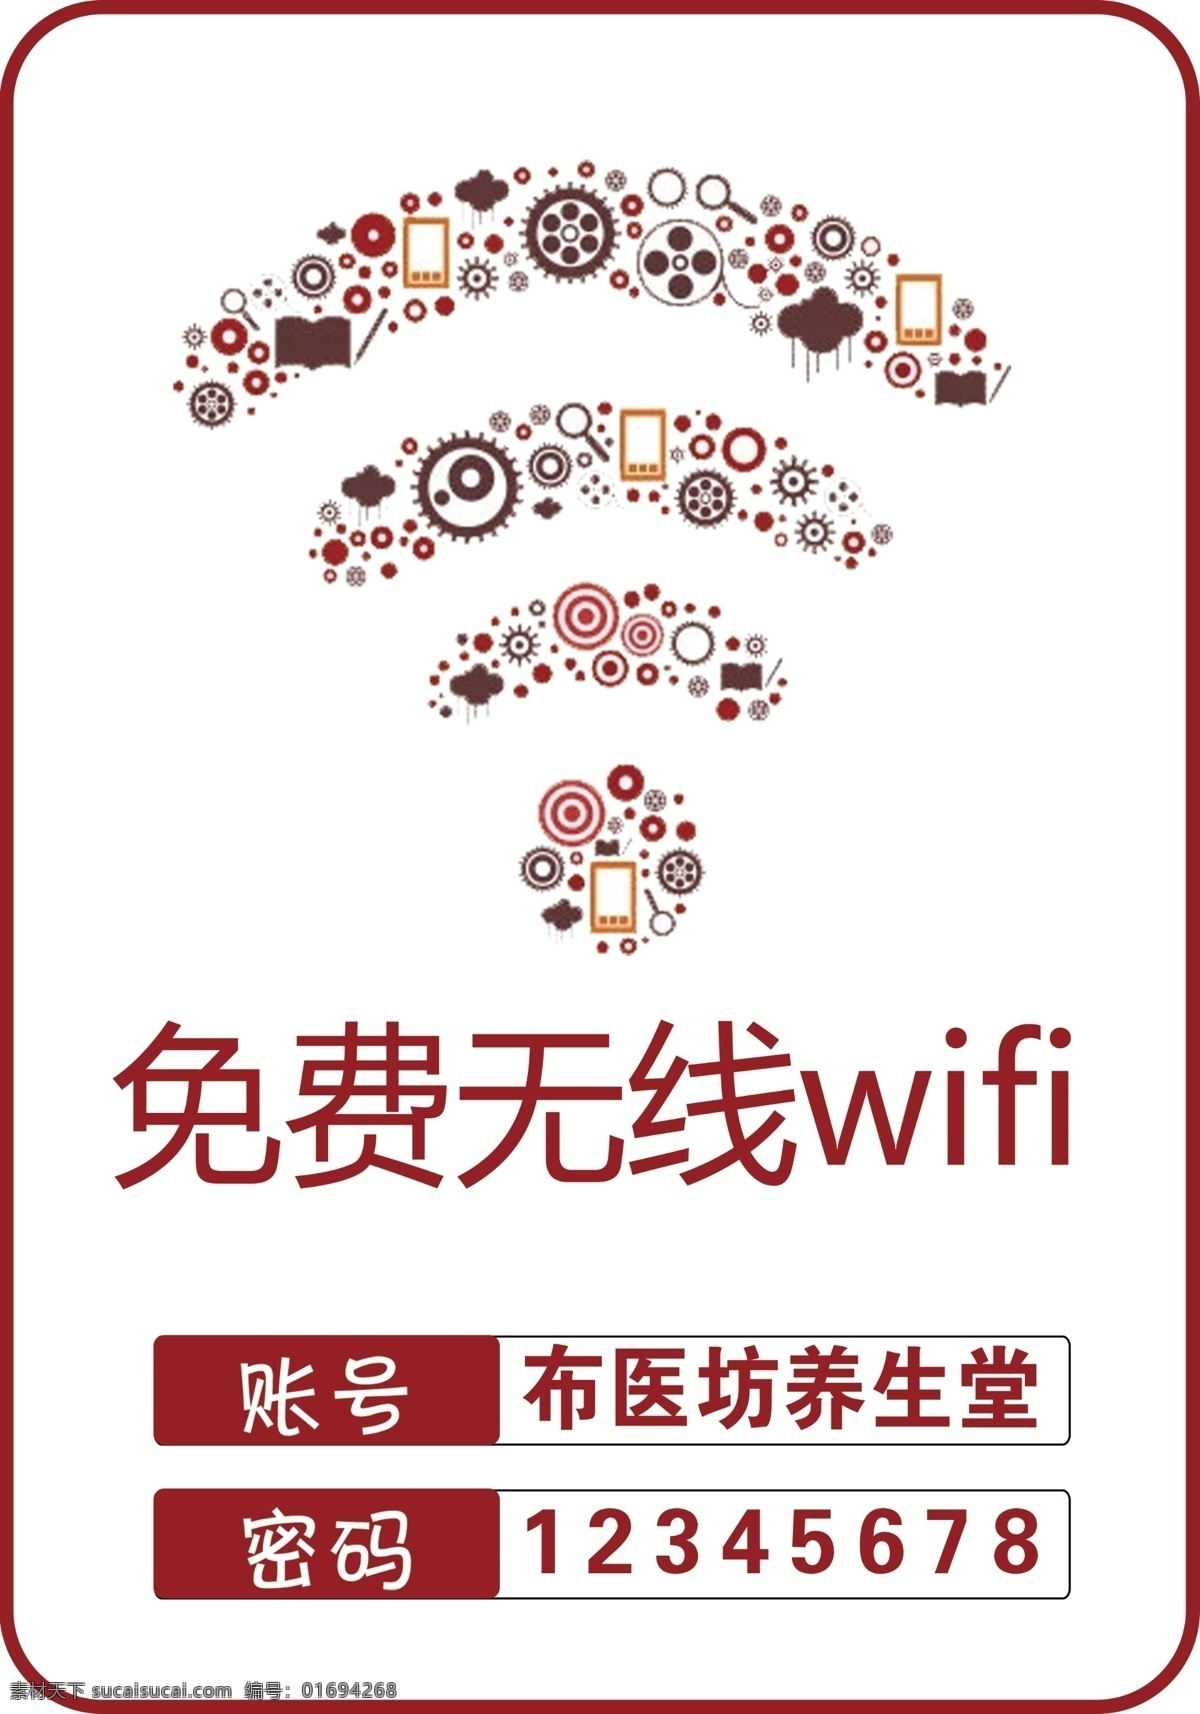 wifi牌 免费wifi wifi wifi标识 wifi图标 免费无线上网 免费网络 牌 系列 广 告设计 wifi海报 wifi展板 无线网络 网络覆盖 免费 海报 室内广告设计